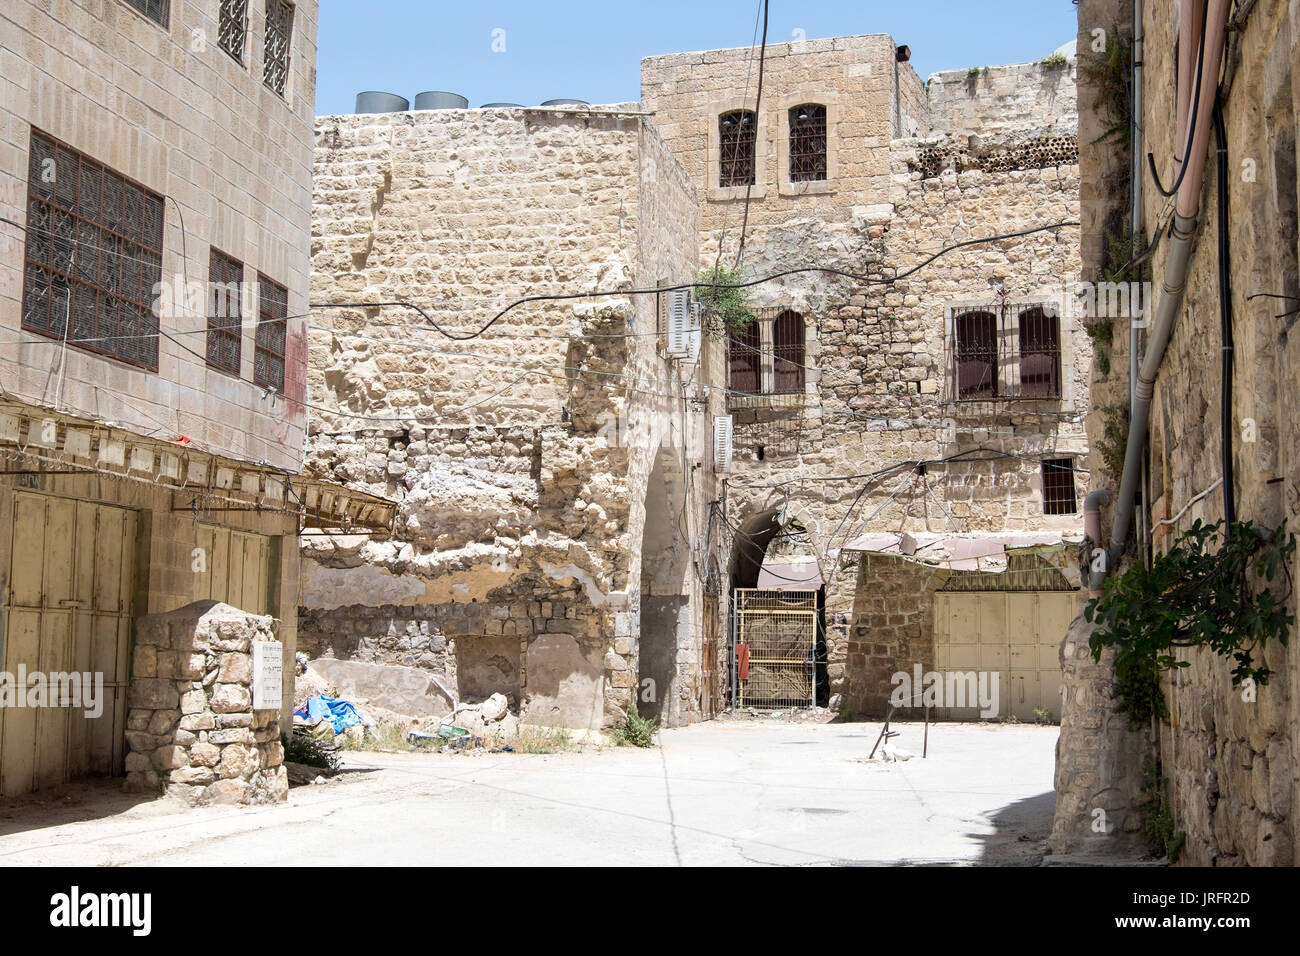 Einsame Shuhada Street, Hebron, West Bank, wo Palästinenser aufgrund der gewaltsamen Besetzung durch 850 israelische Siedler verboten sind Stockfoto